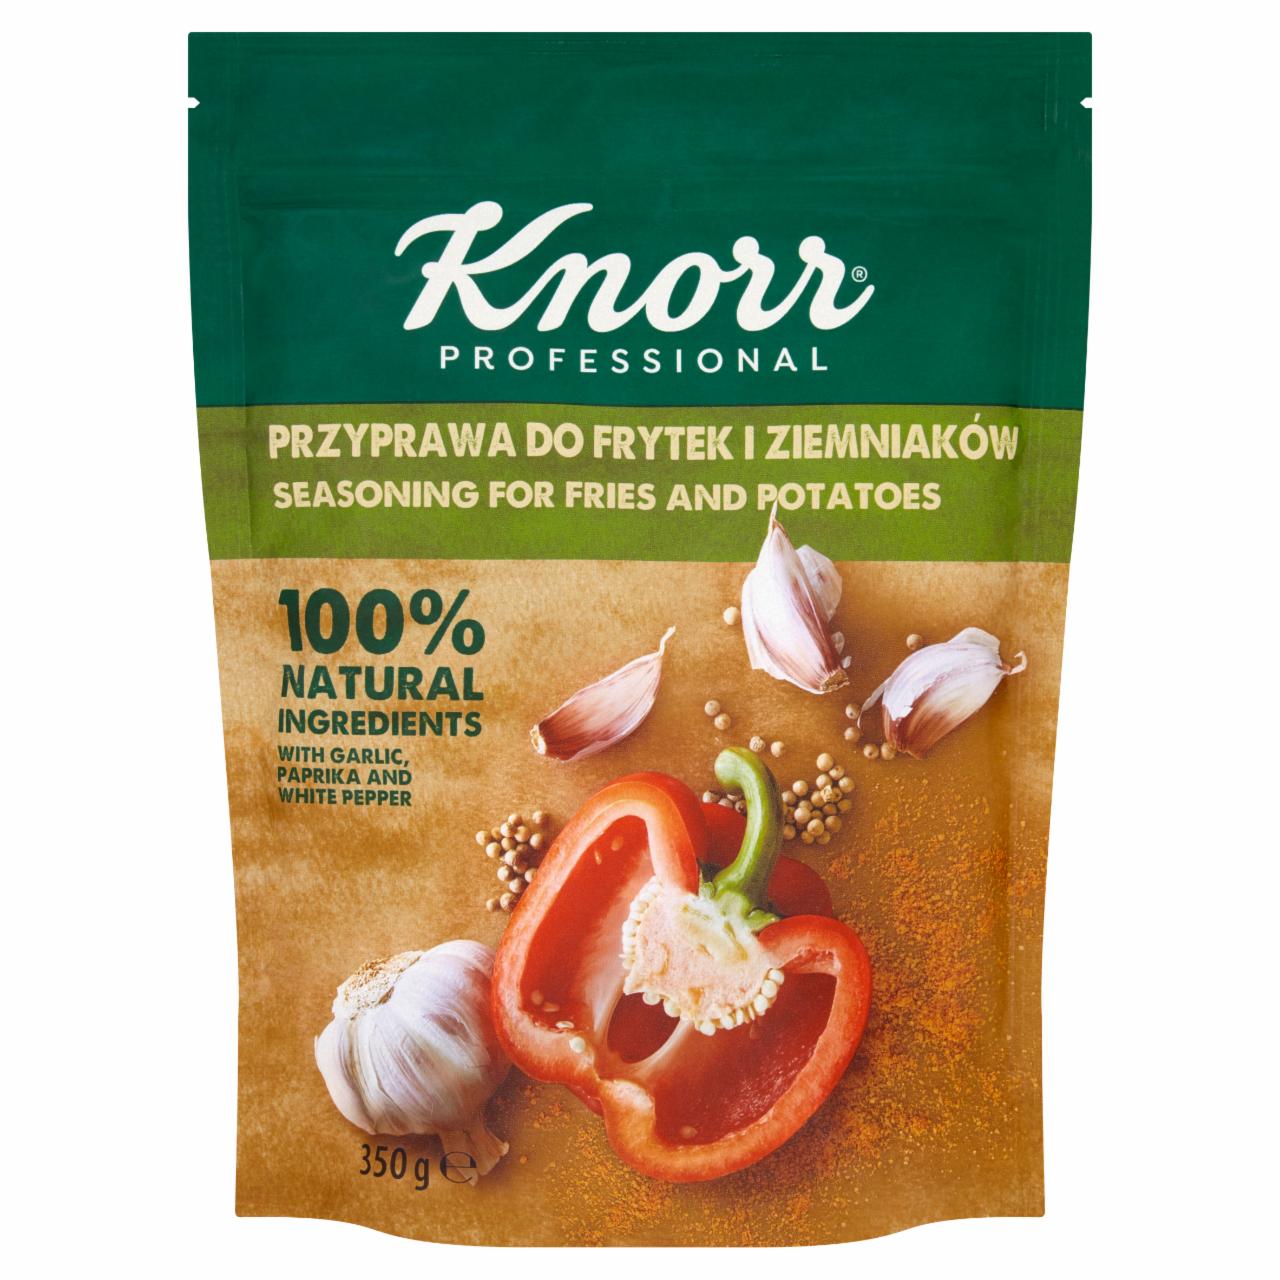 Zdjęcia - Knorr Professional Przyprawa do frytek i ziemniaków 350 g